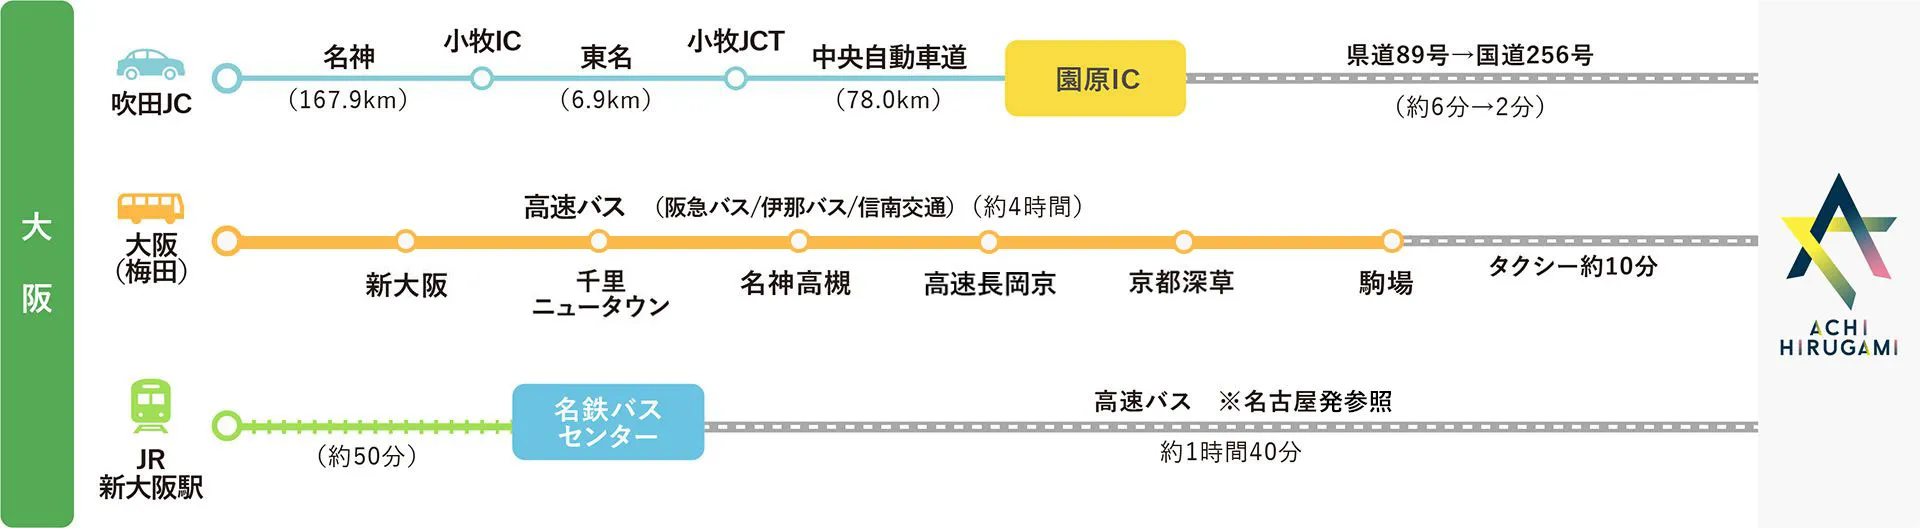 大阪発アクセスマップ